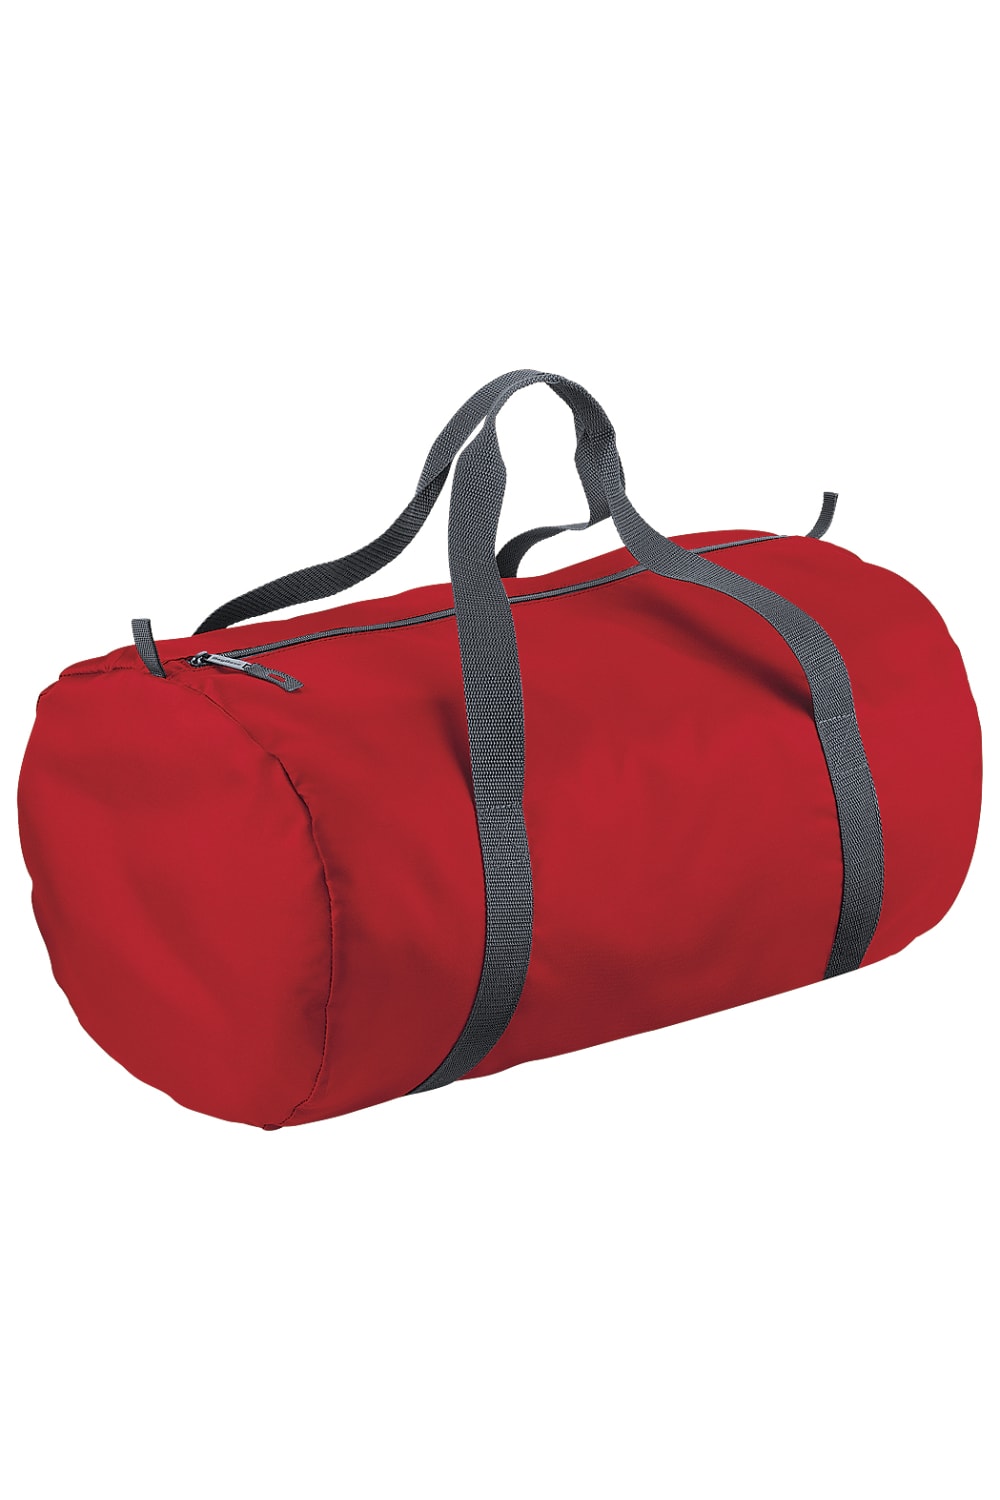 Packaway Barrel Bag/Duffel Water Resistant Travel Bag (8 Gallons) (Pack Of 2) - Classic Red